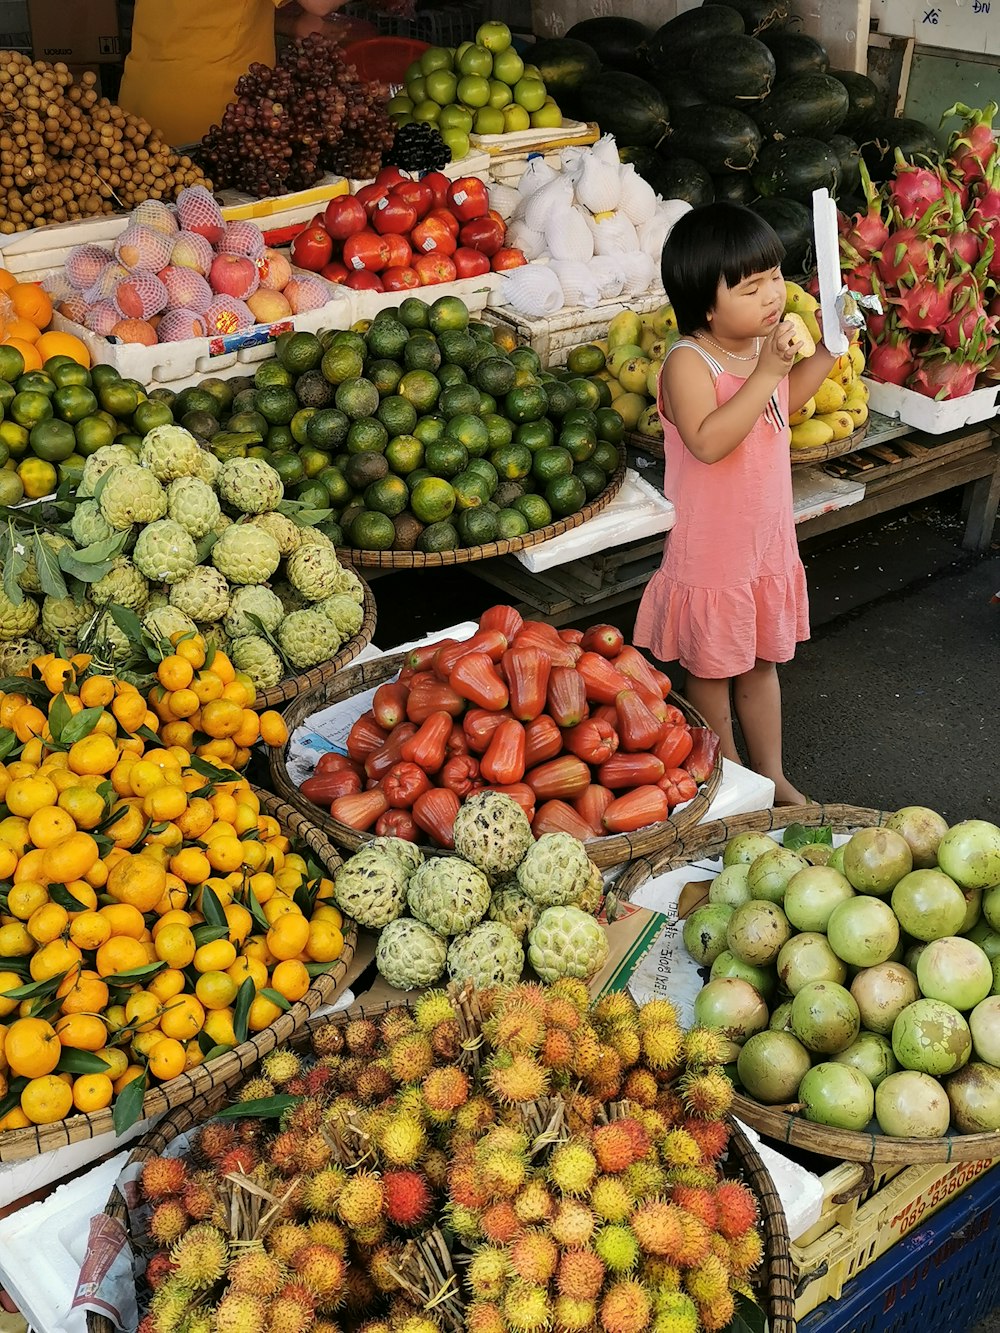 Mujer en camisa rosa de manga larga de pie junto a las frutas